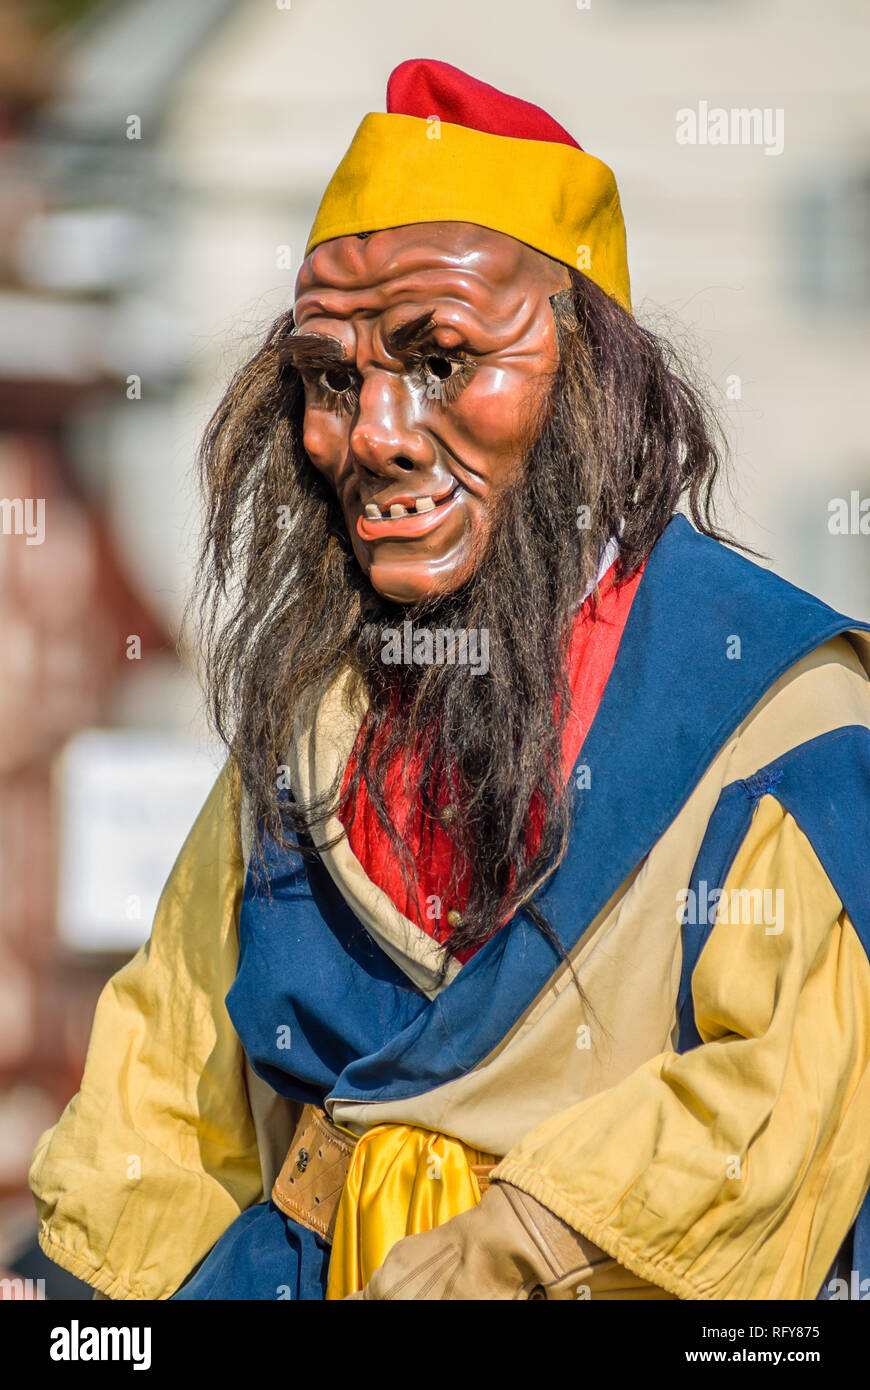 Costume de frère Fritschi pendant le Carnaval de Lucerne, Suisse. Frère Fritschi est le chef imaginaire de la plus grande et la plus ancienne guilde de Lucerne Banque D'Images